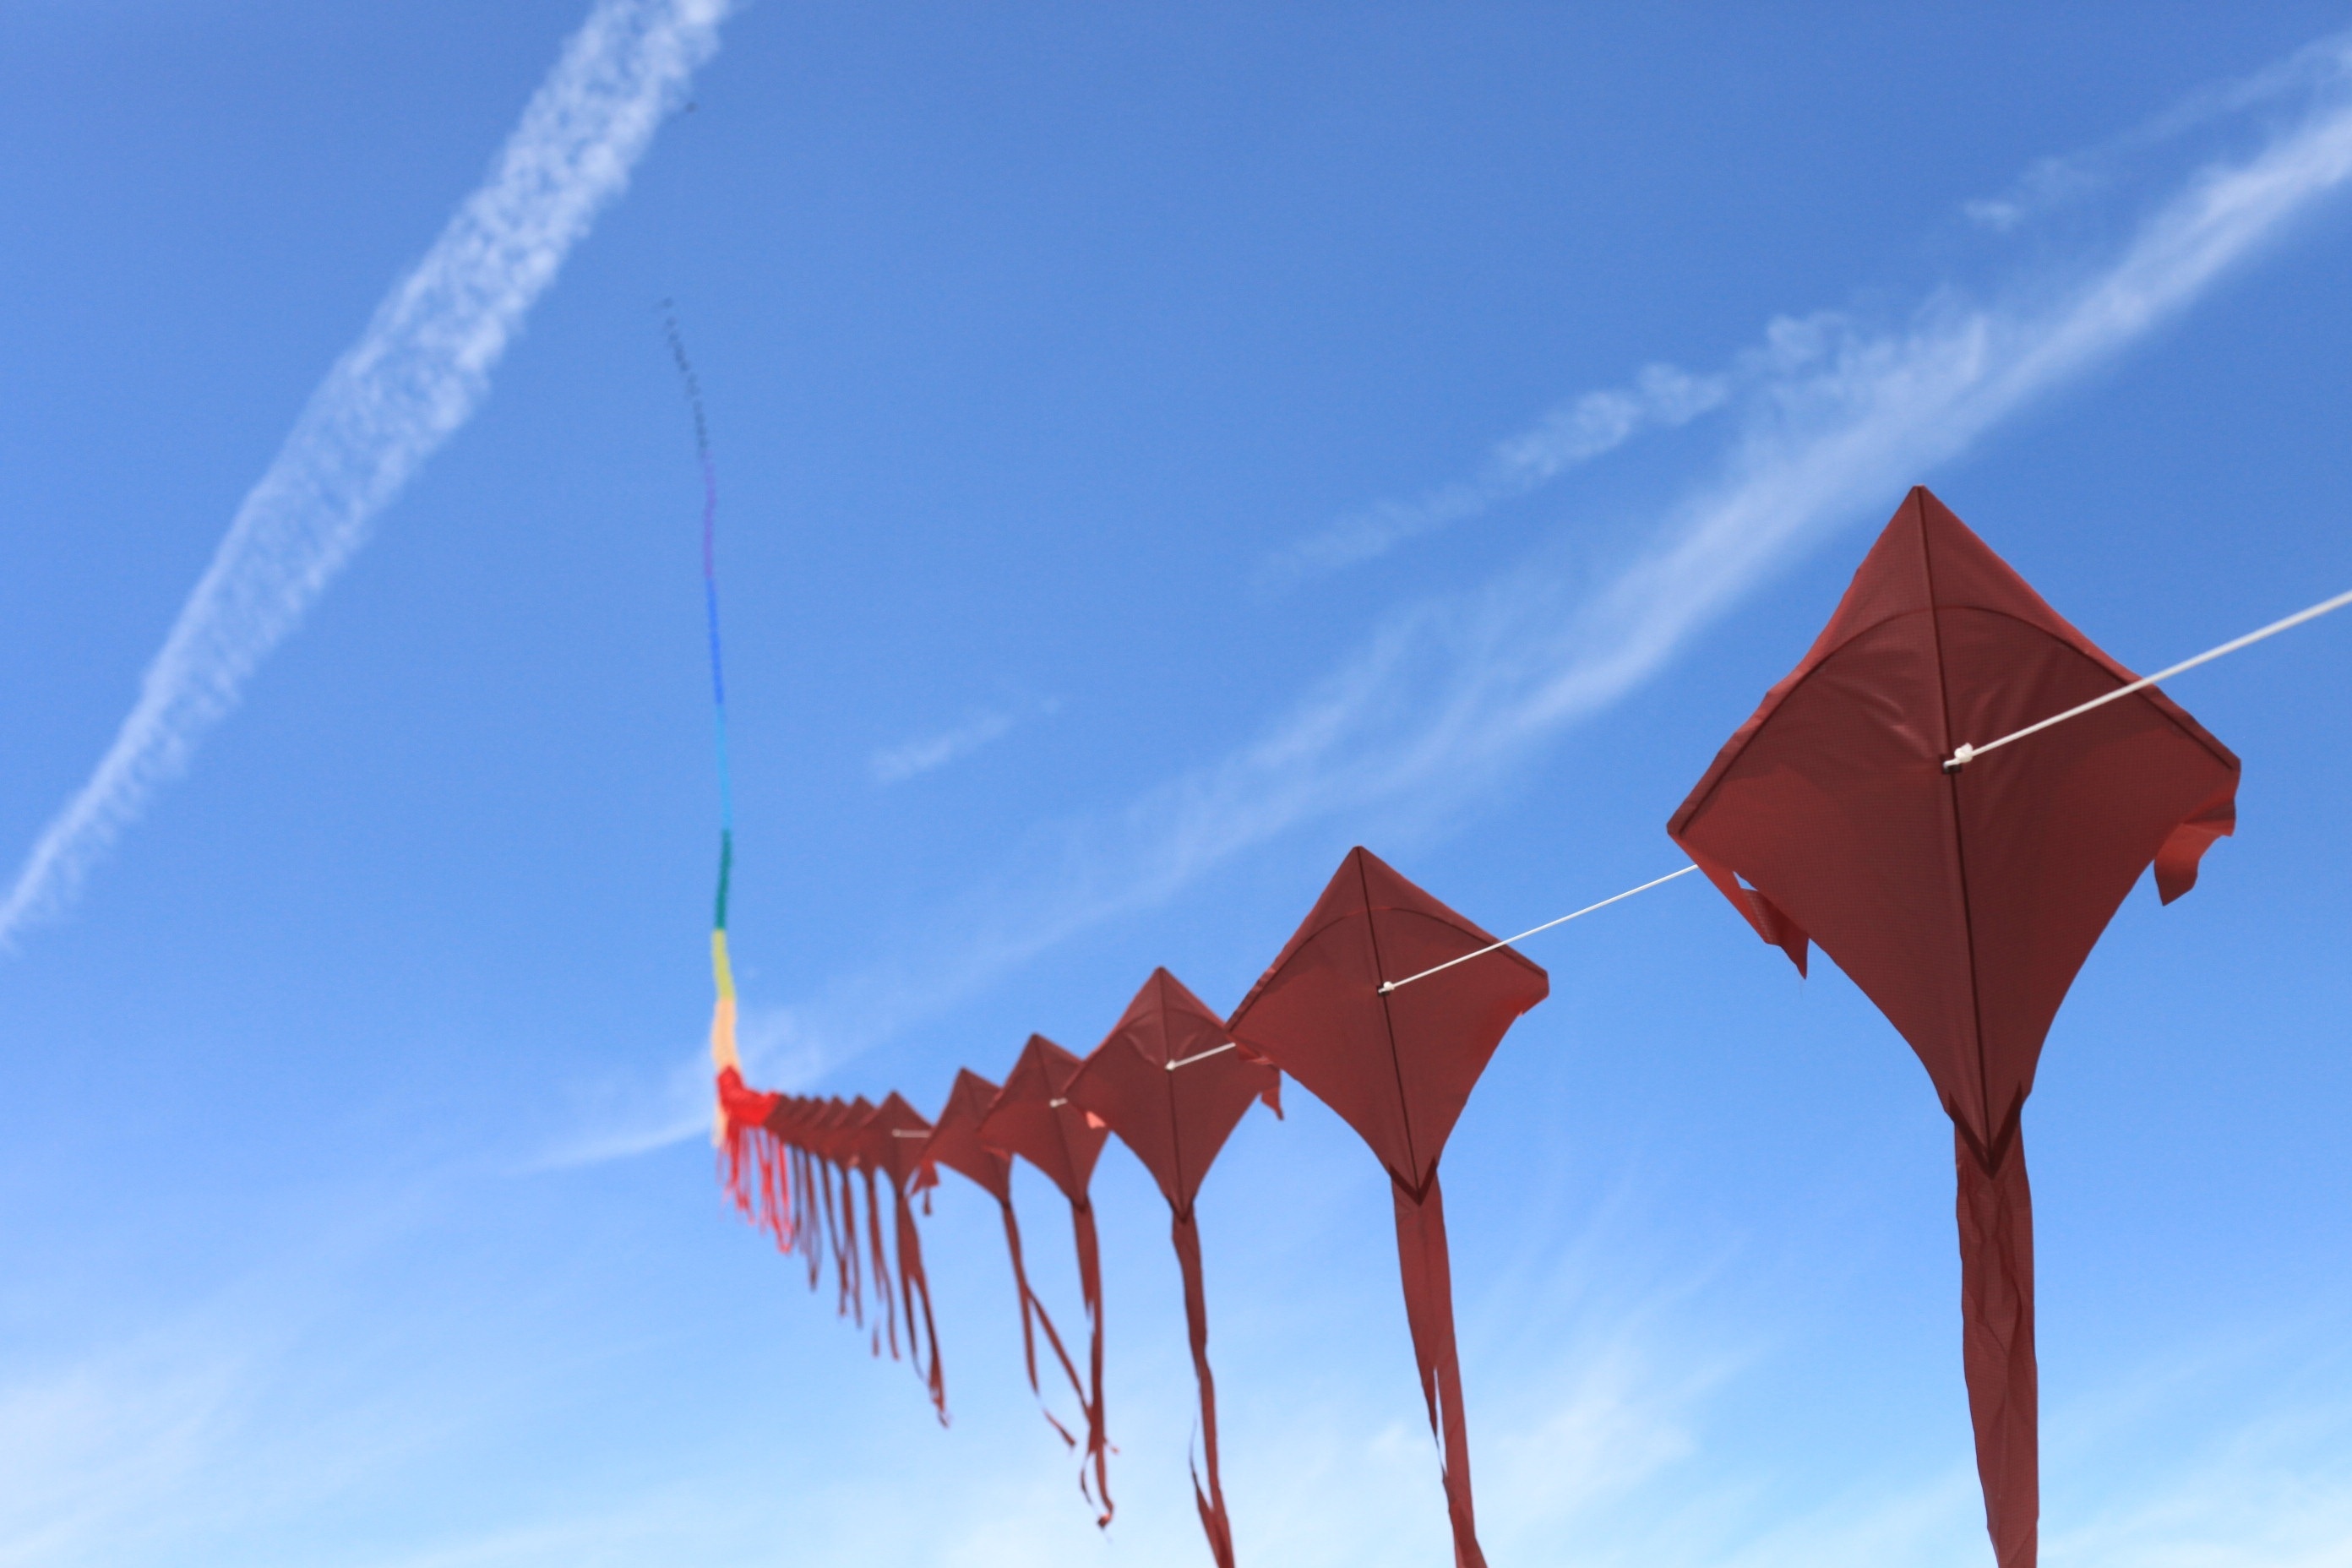 red kites